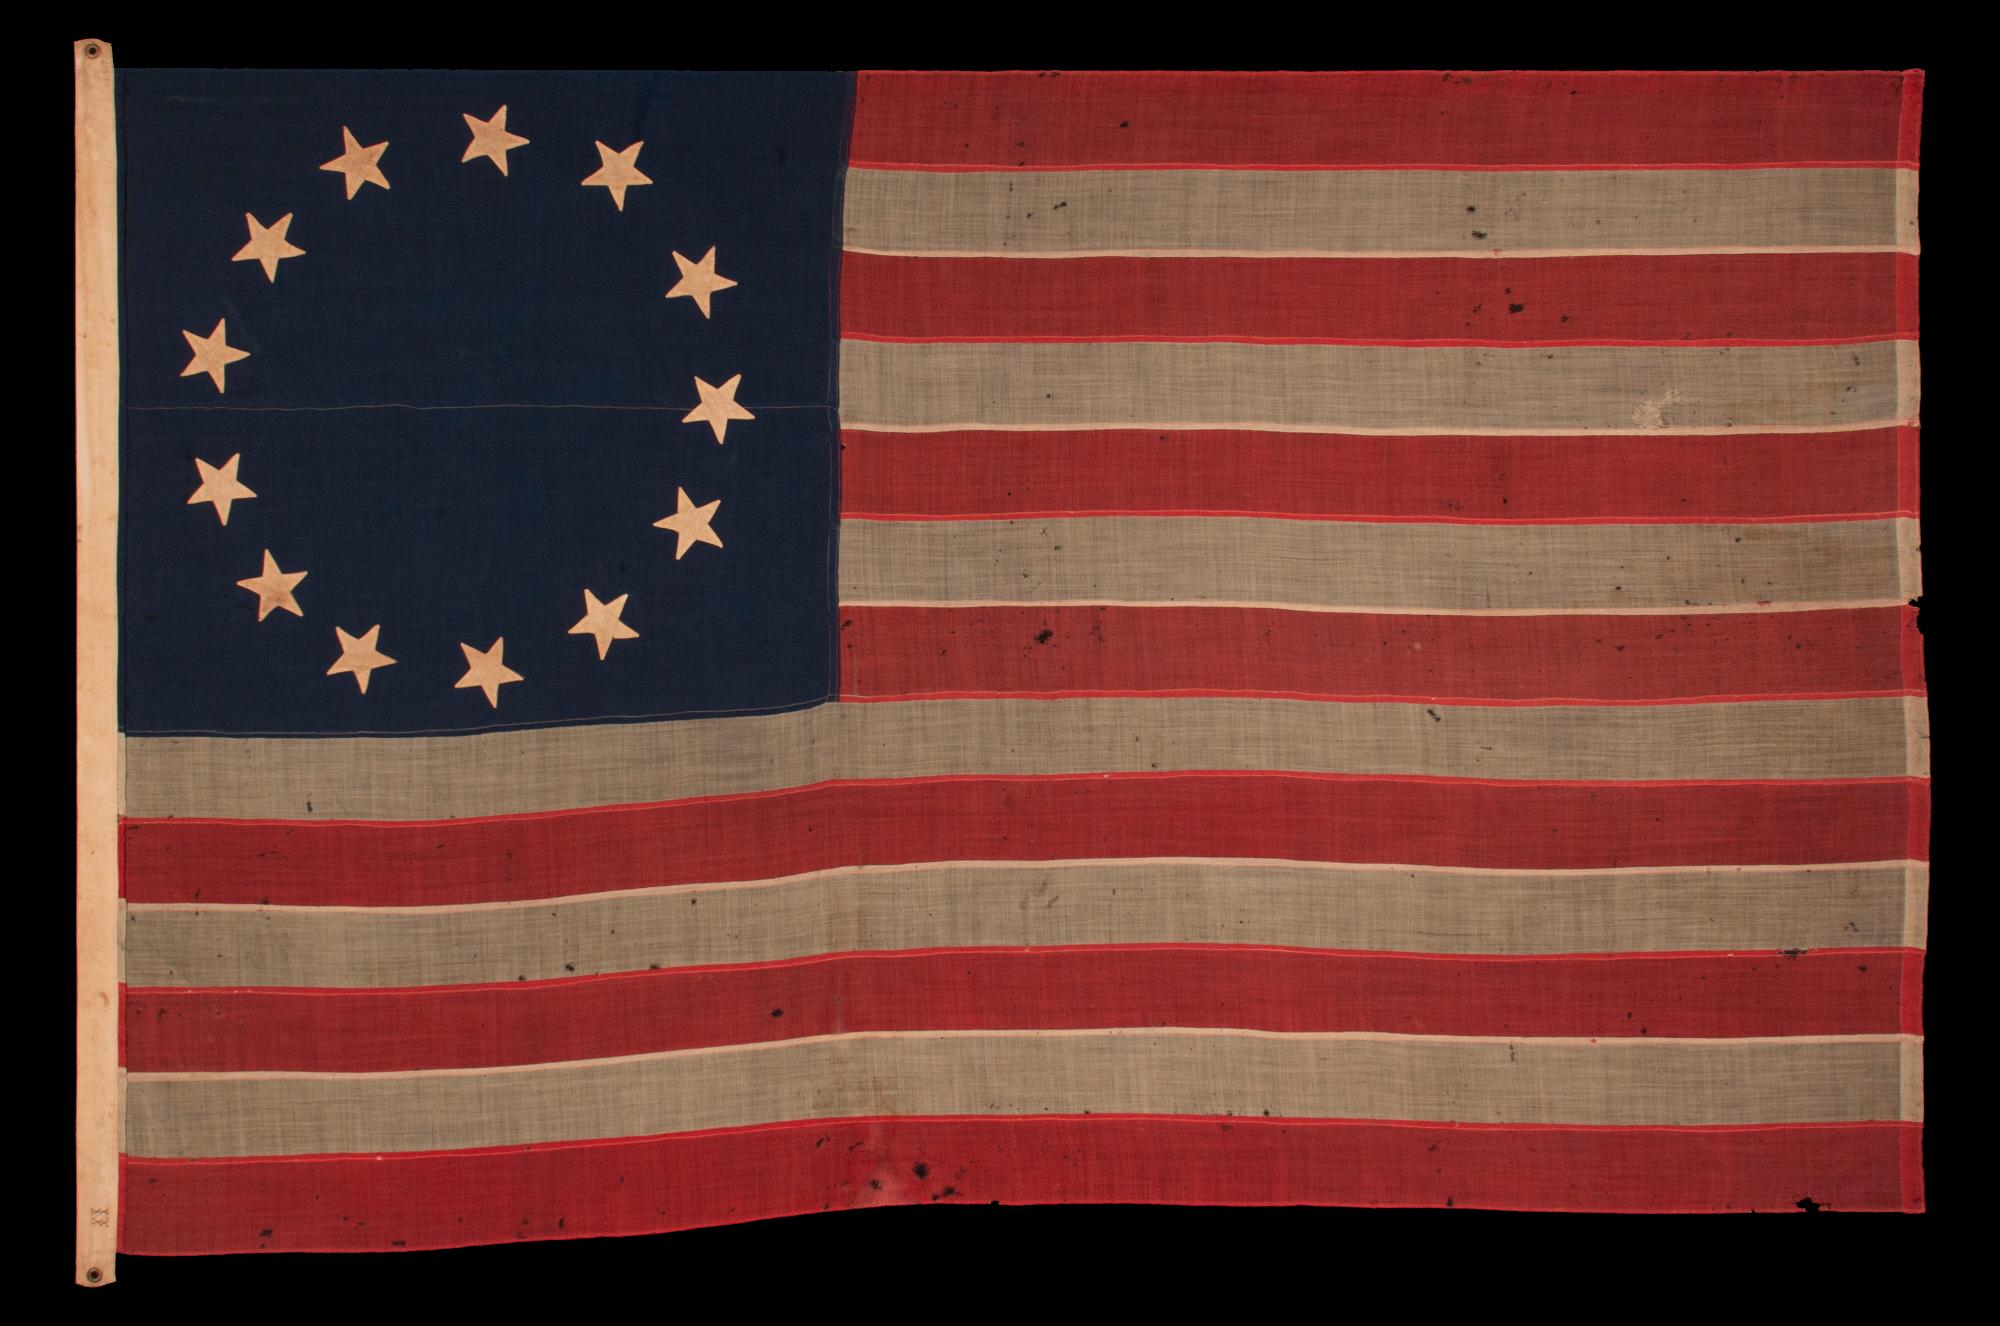 Drapeau américain antique à 13 étoiles dans le motif Betsy Ross, l'un des trois seuls exemples que j'ai rencontrés avant les années 1890 ; une trouvaille extraordinaire, de la période de la guerre civile (1861-1865) ou juste après, extrêmement grand